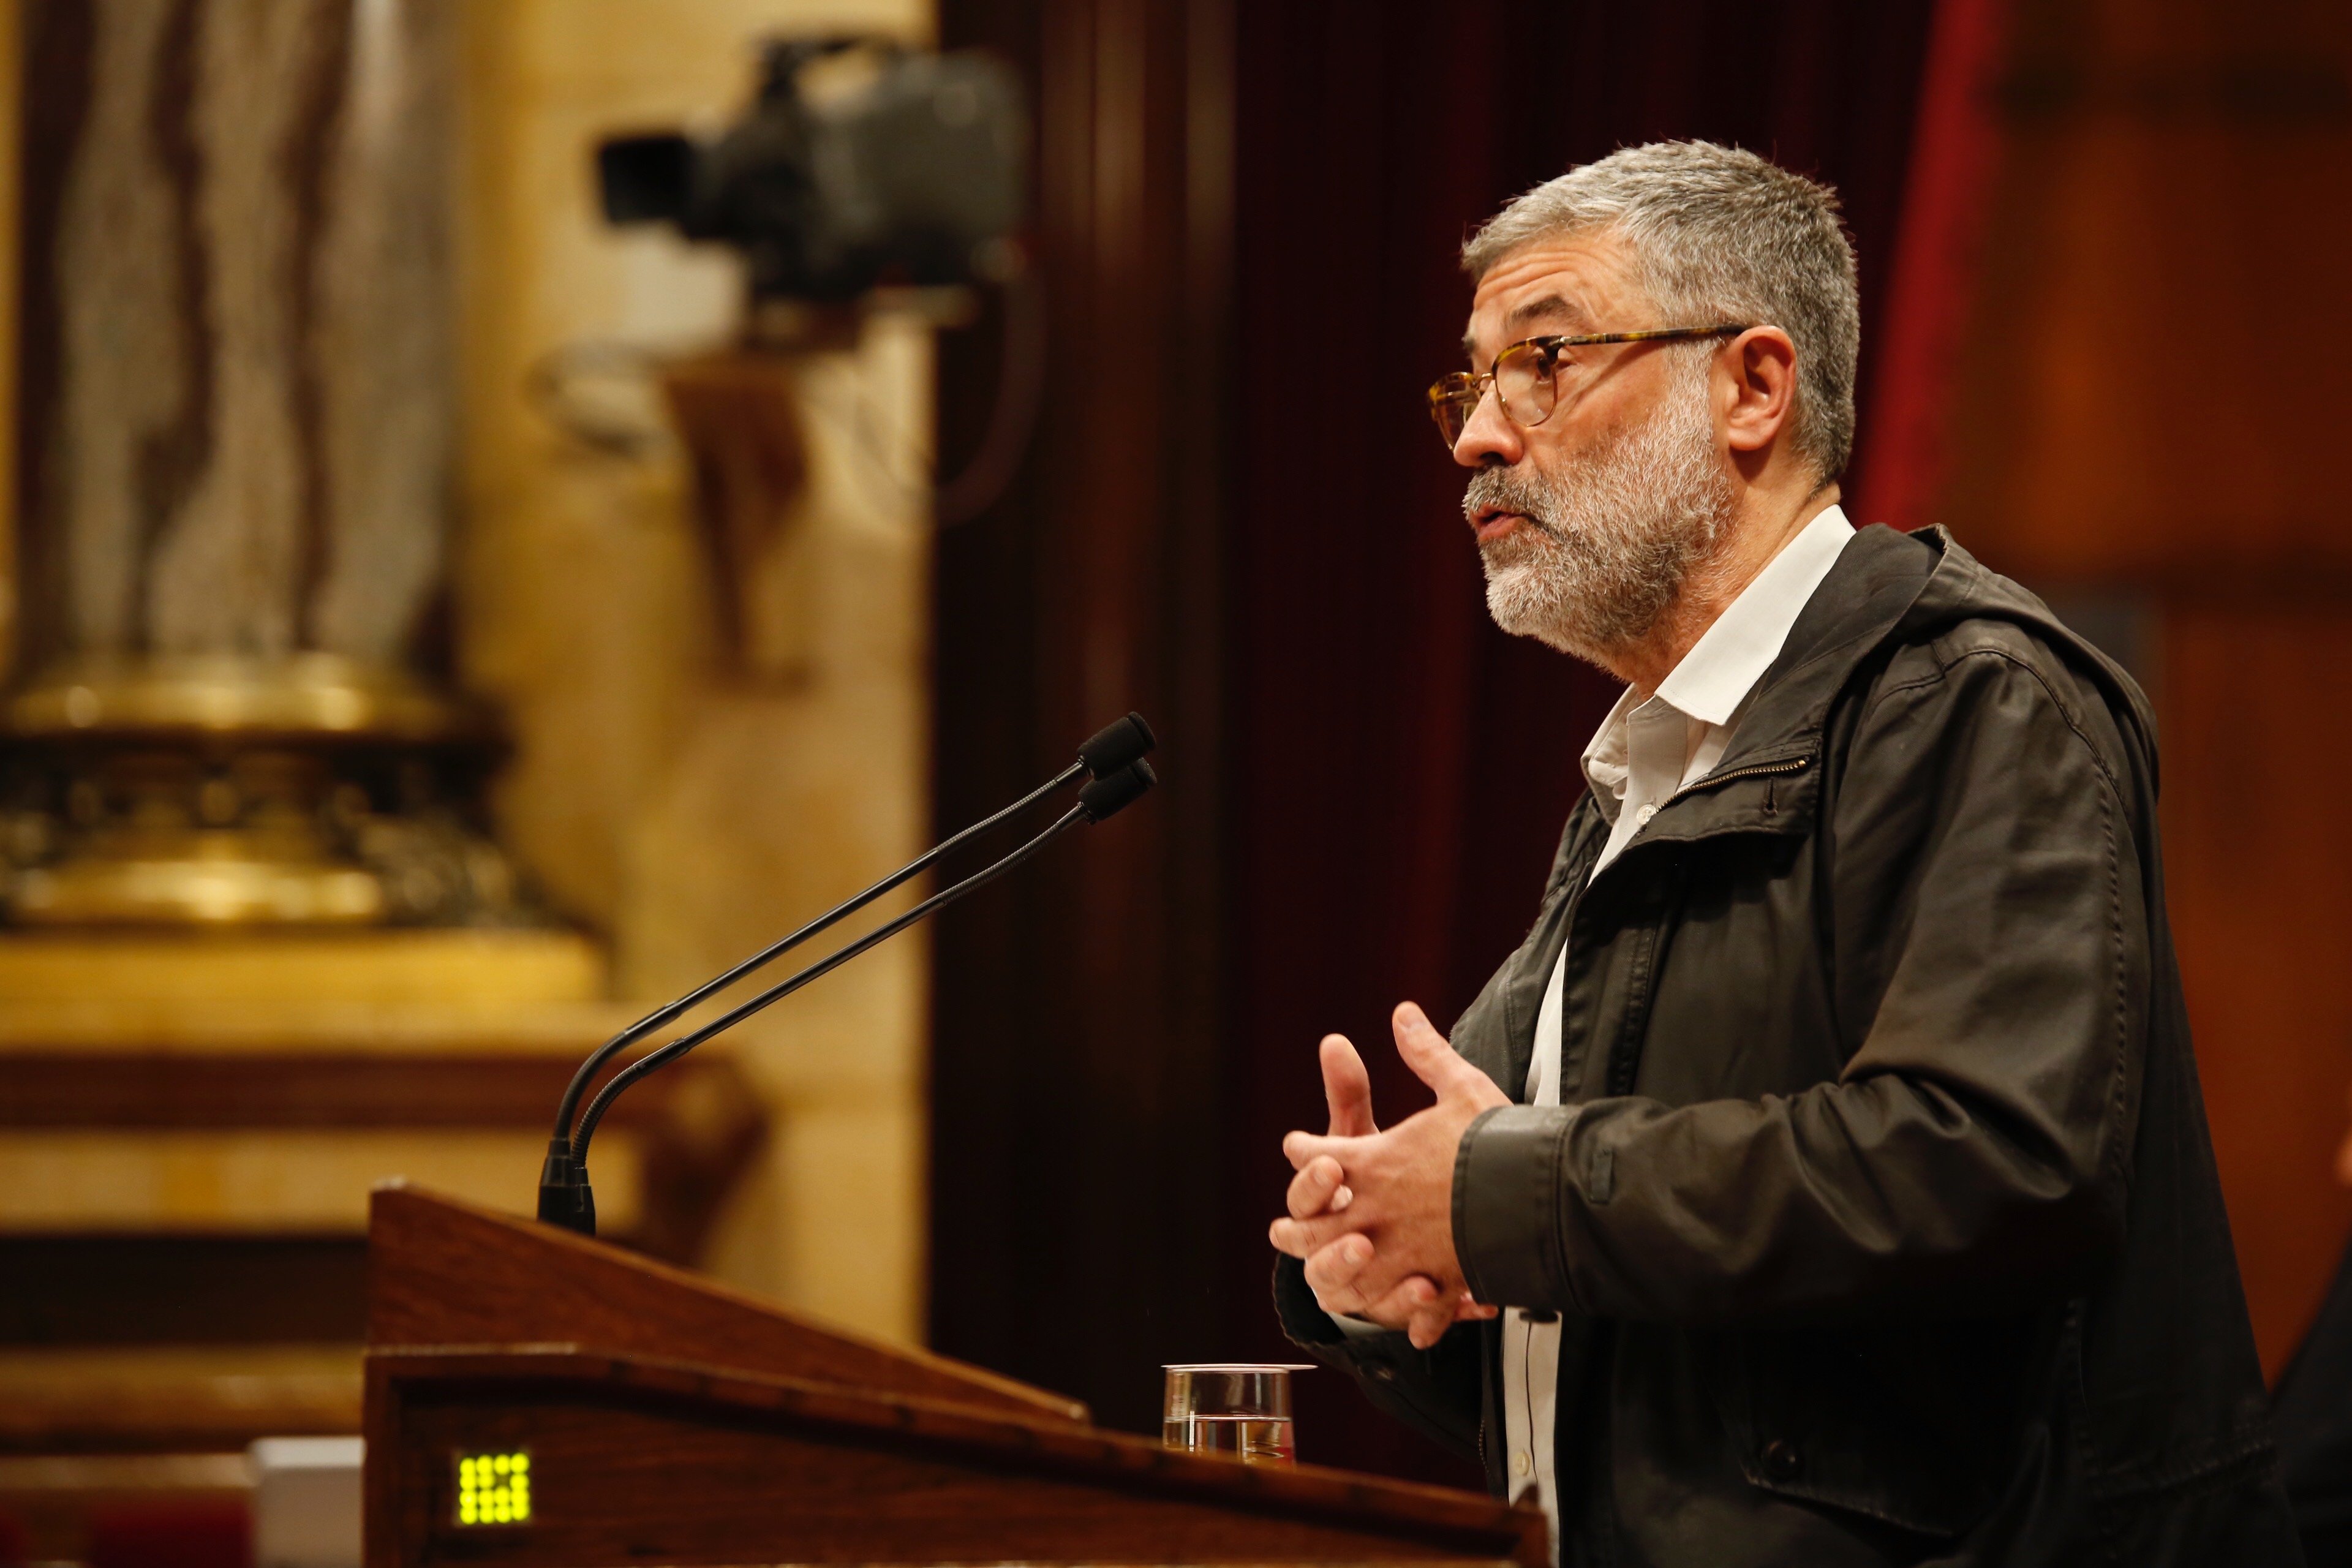 Carles Riera reitera que hay que romper con el Estado después del mantenimiento del 155